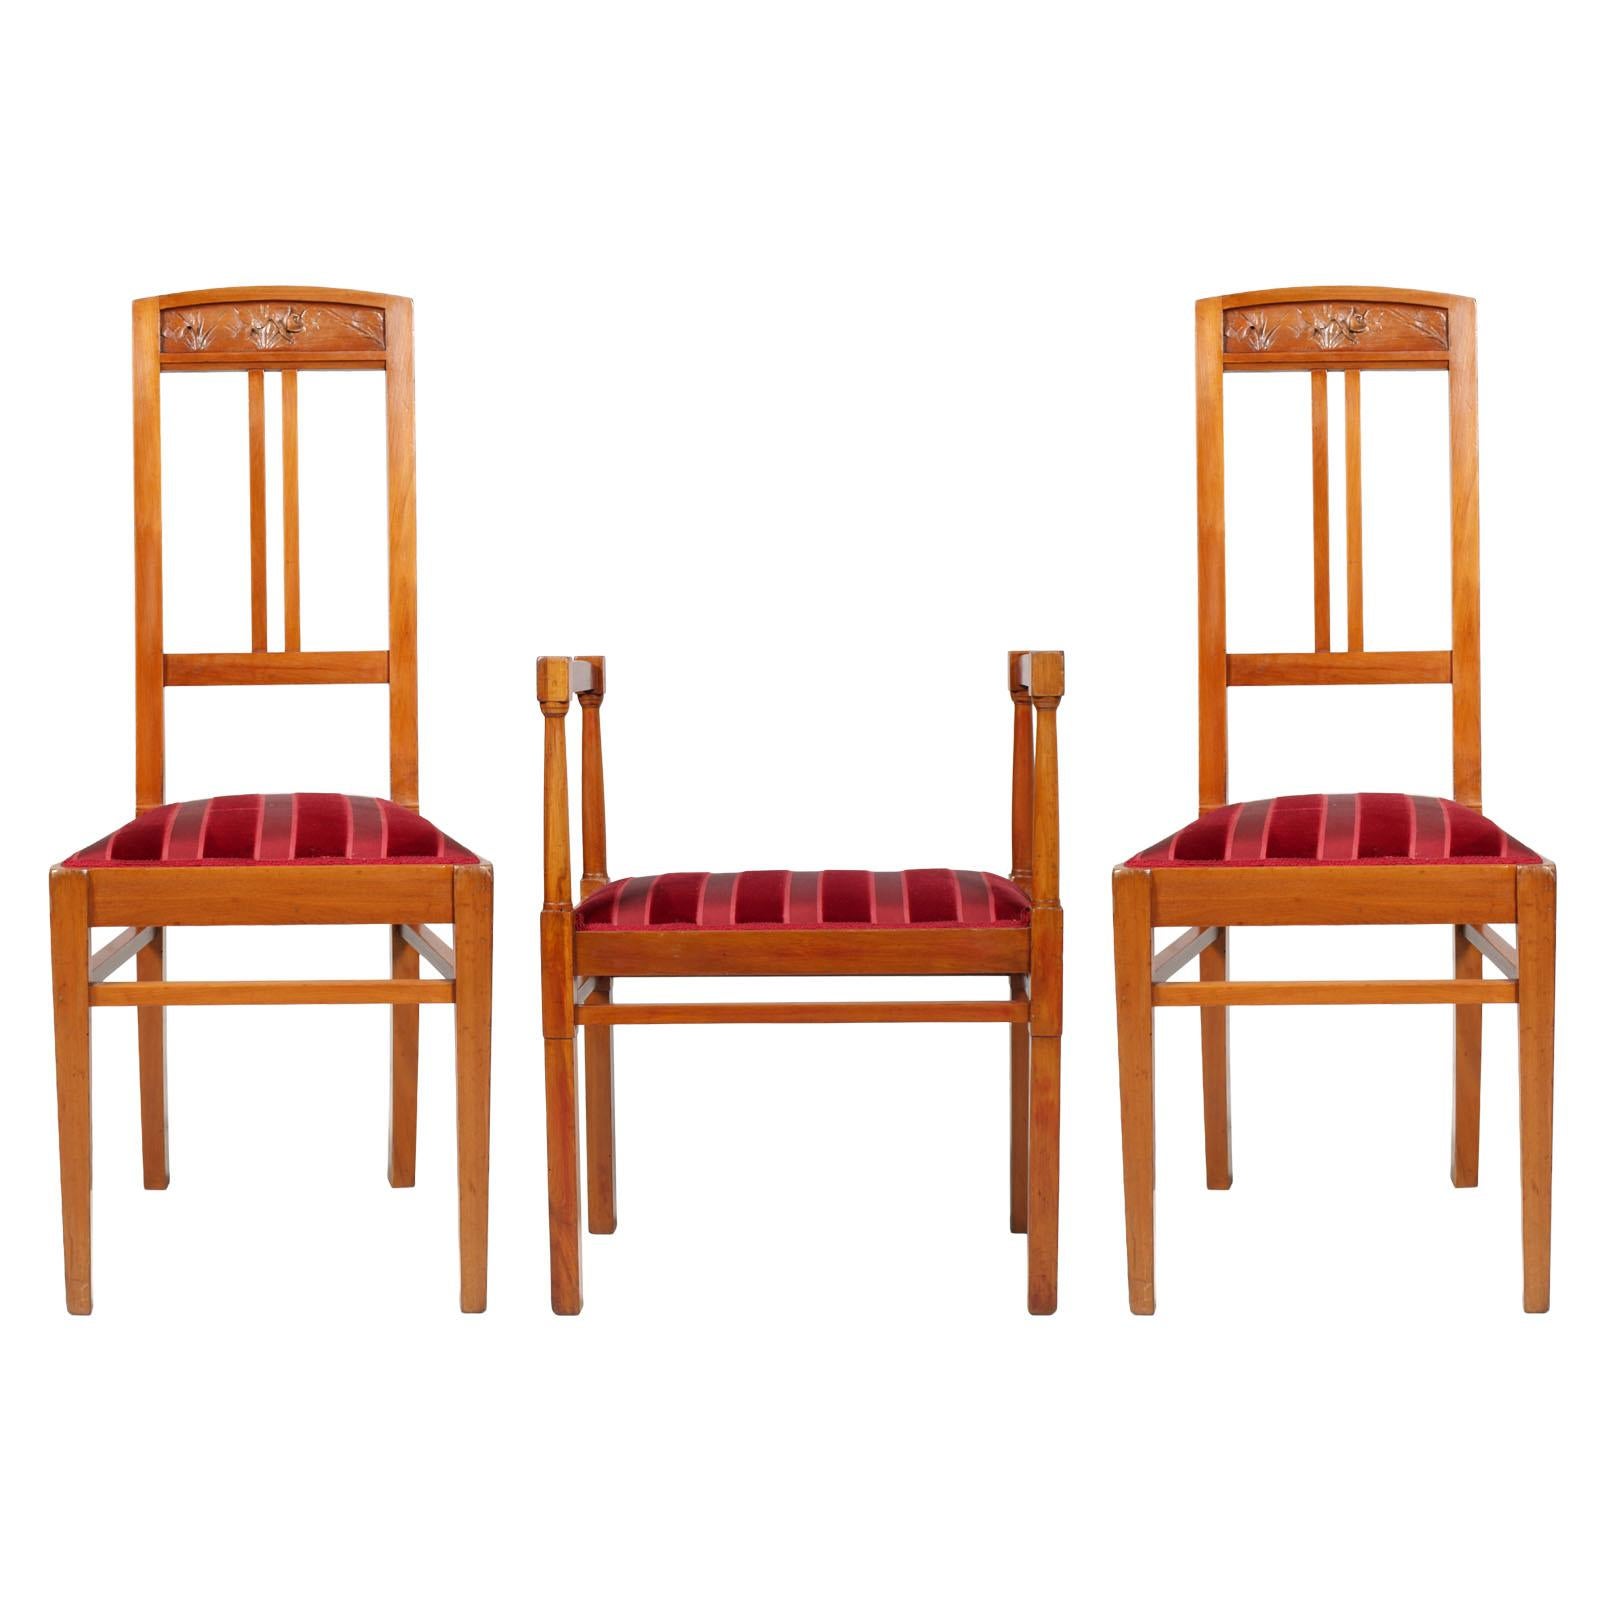 Italian Art Nouveau Side Chairs with Stool, Blond Walnut, Wax-Polished